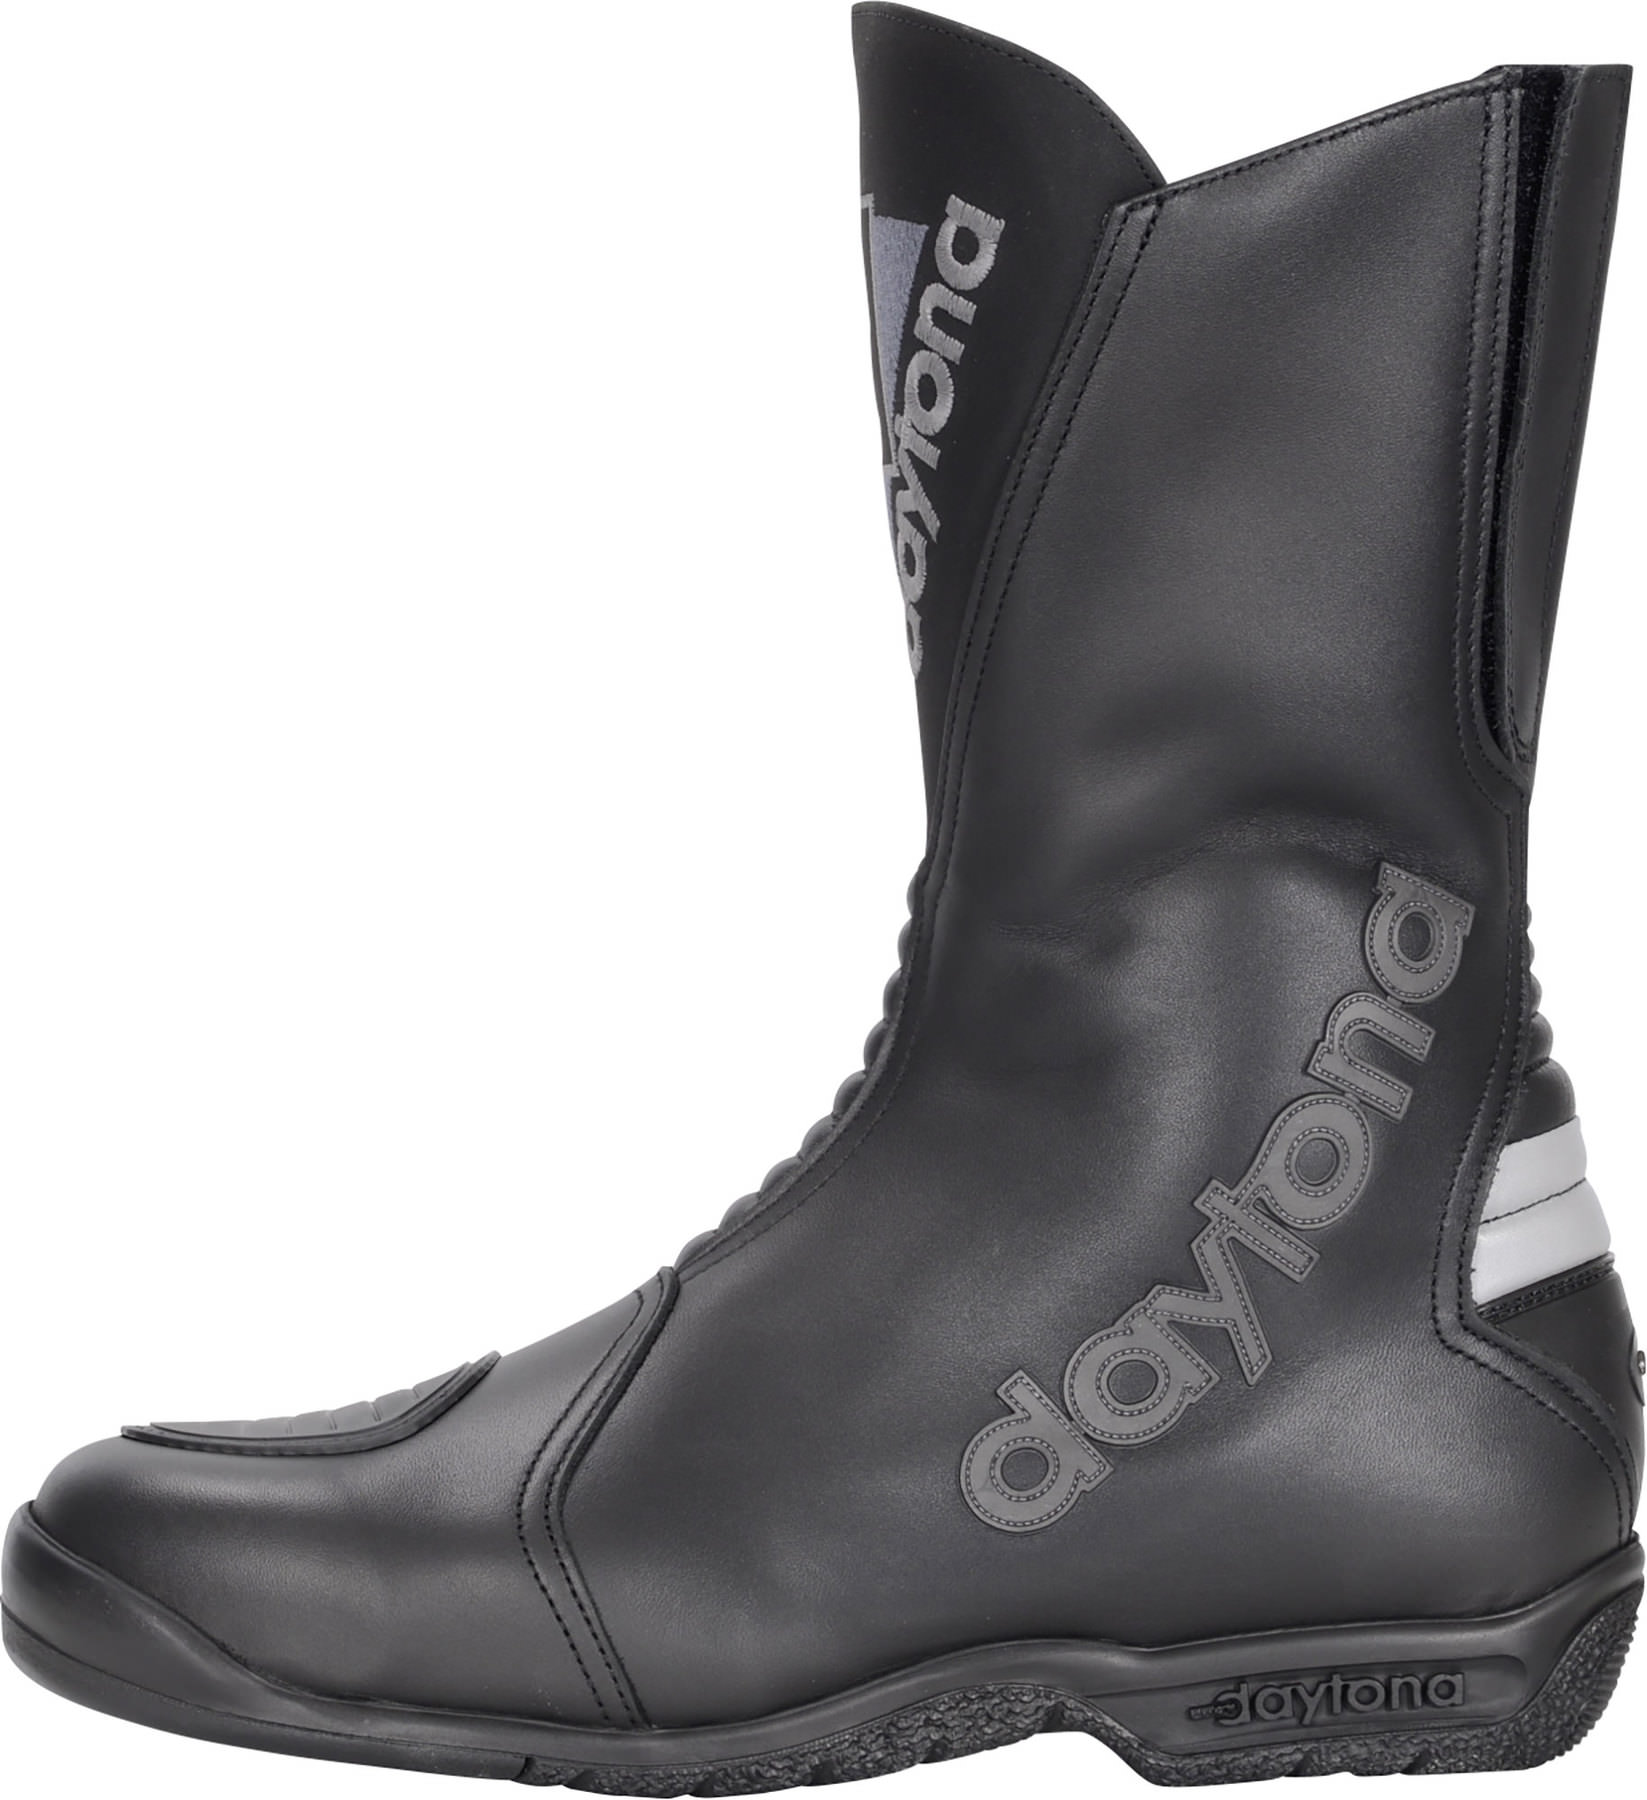 Buy Daytona flash touring boots | Louis 